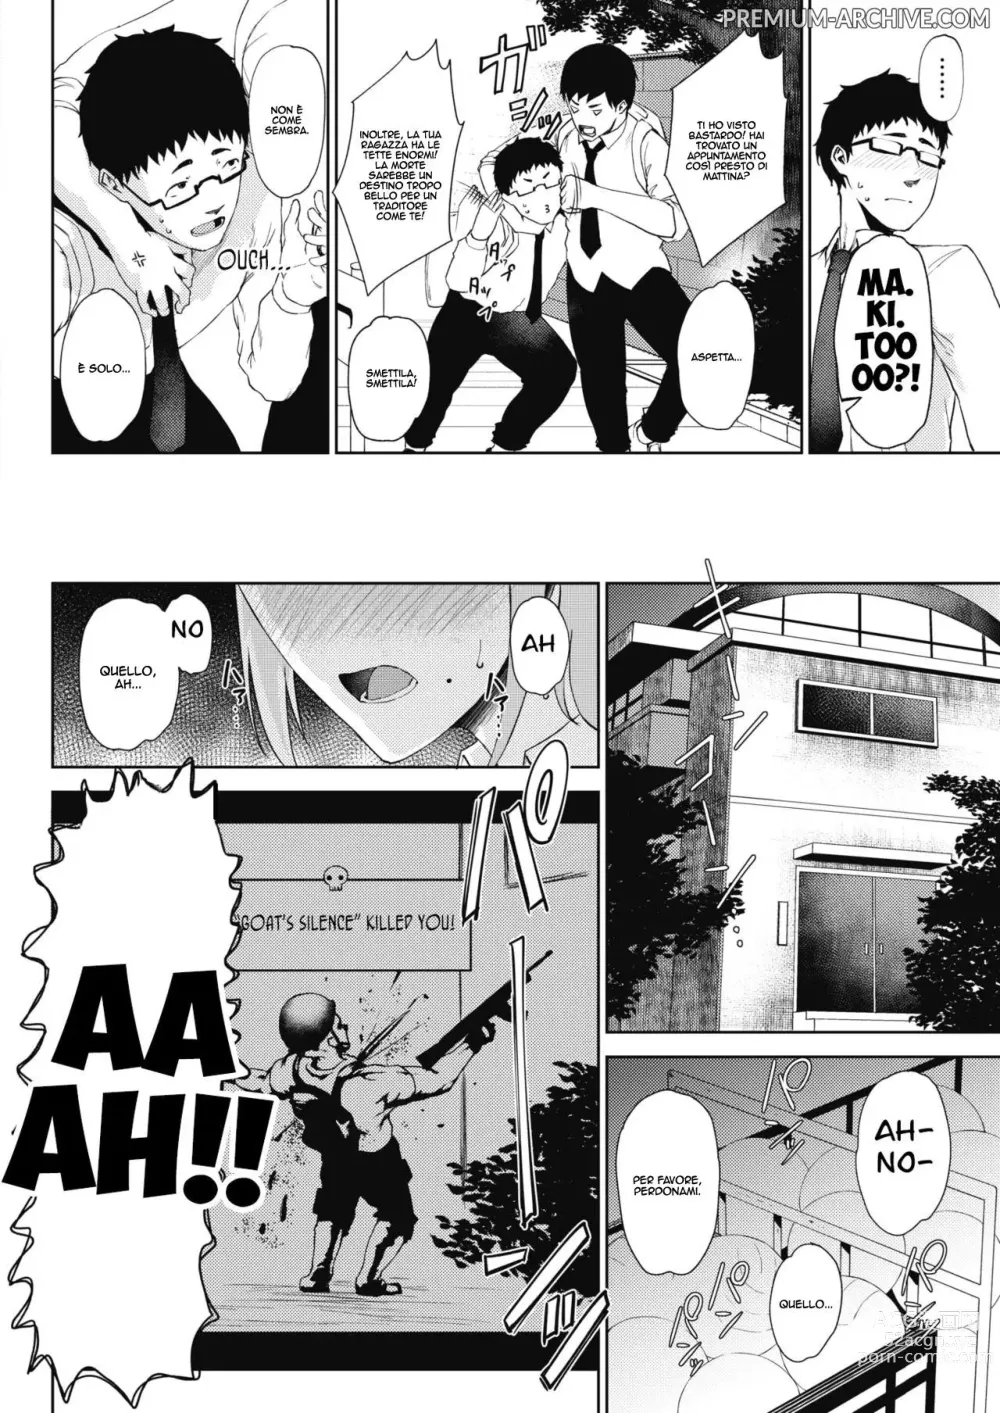 Page 2 of manga Una Ragazza Amichevole con un Nerd